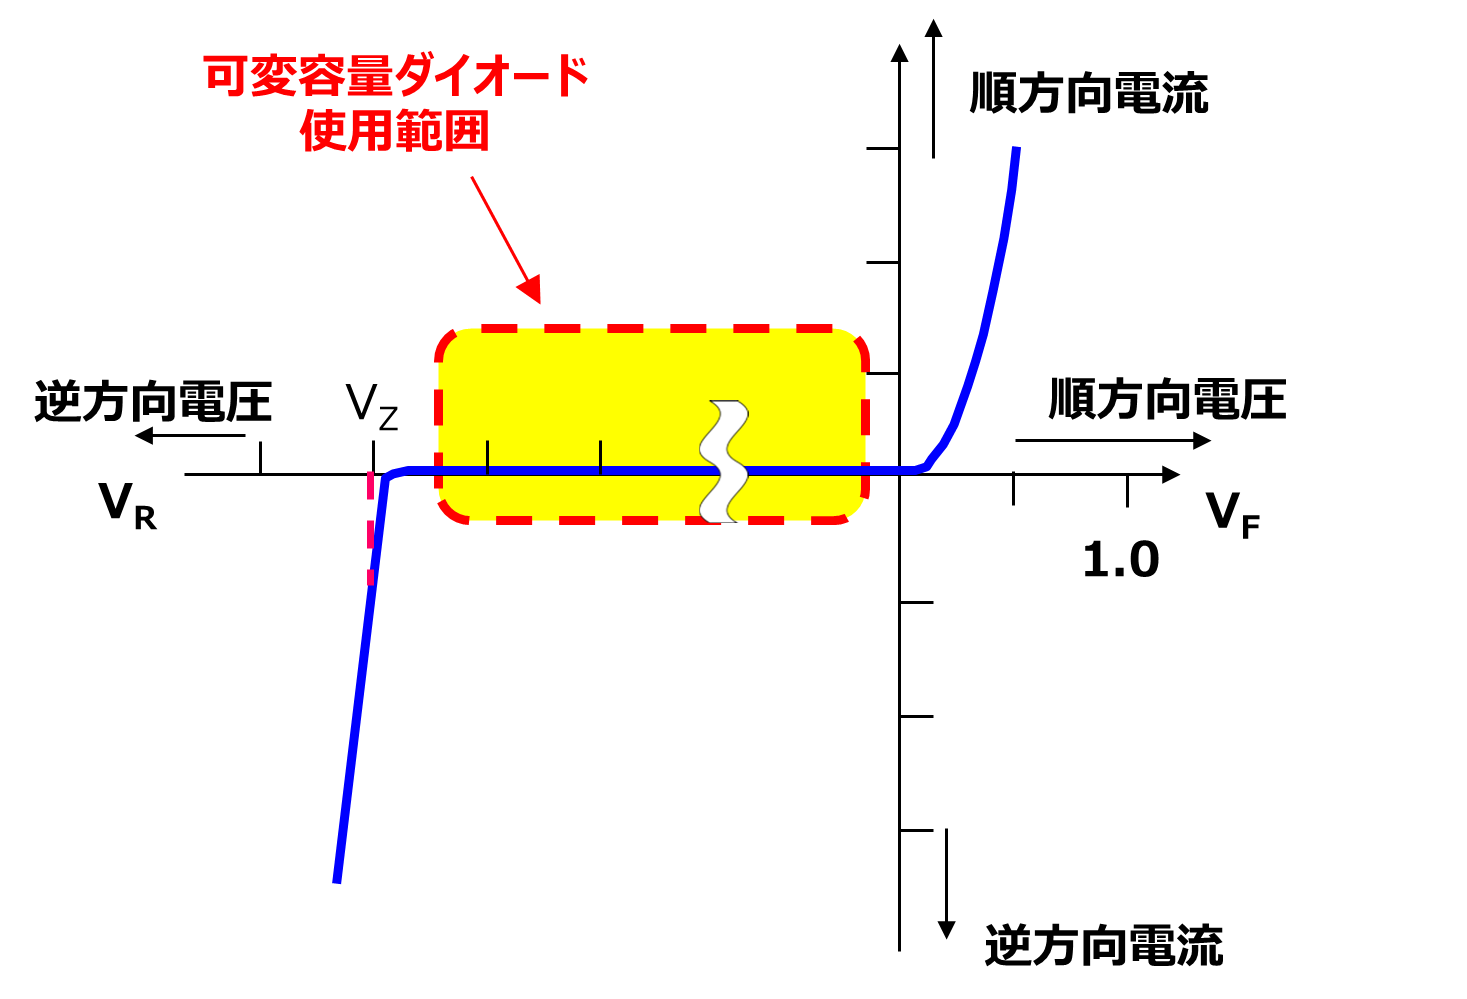 図-1　pn接合ダイオード　電流 – 電圧特性